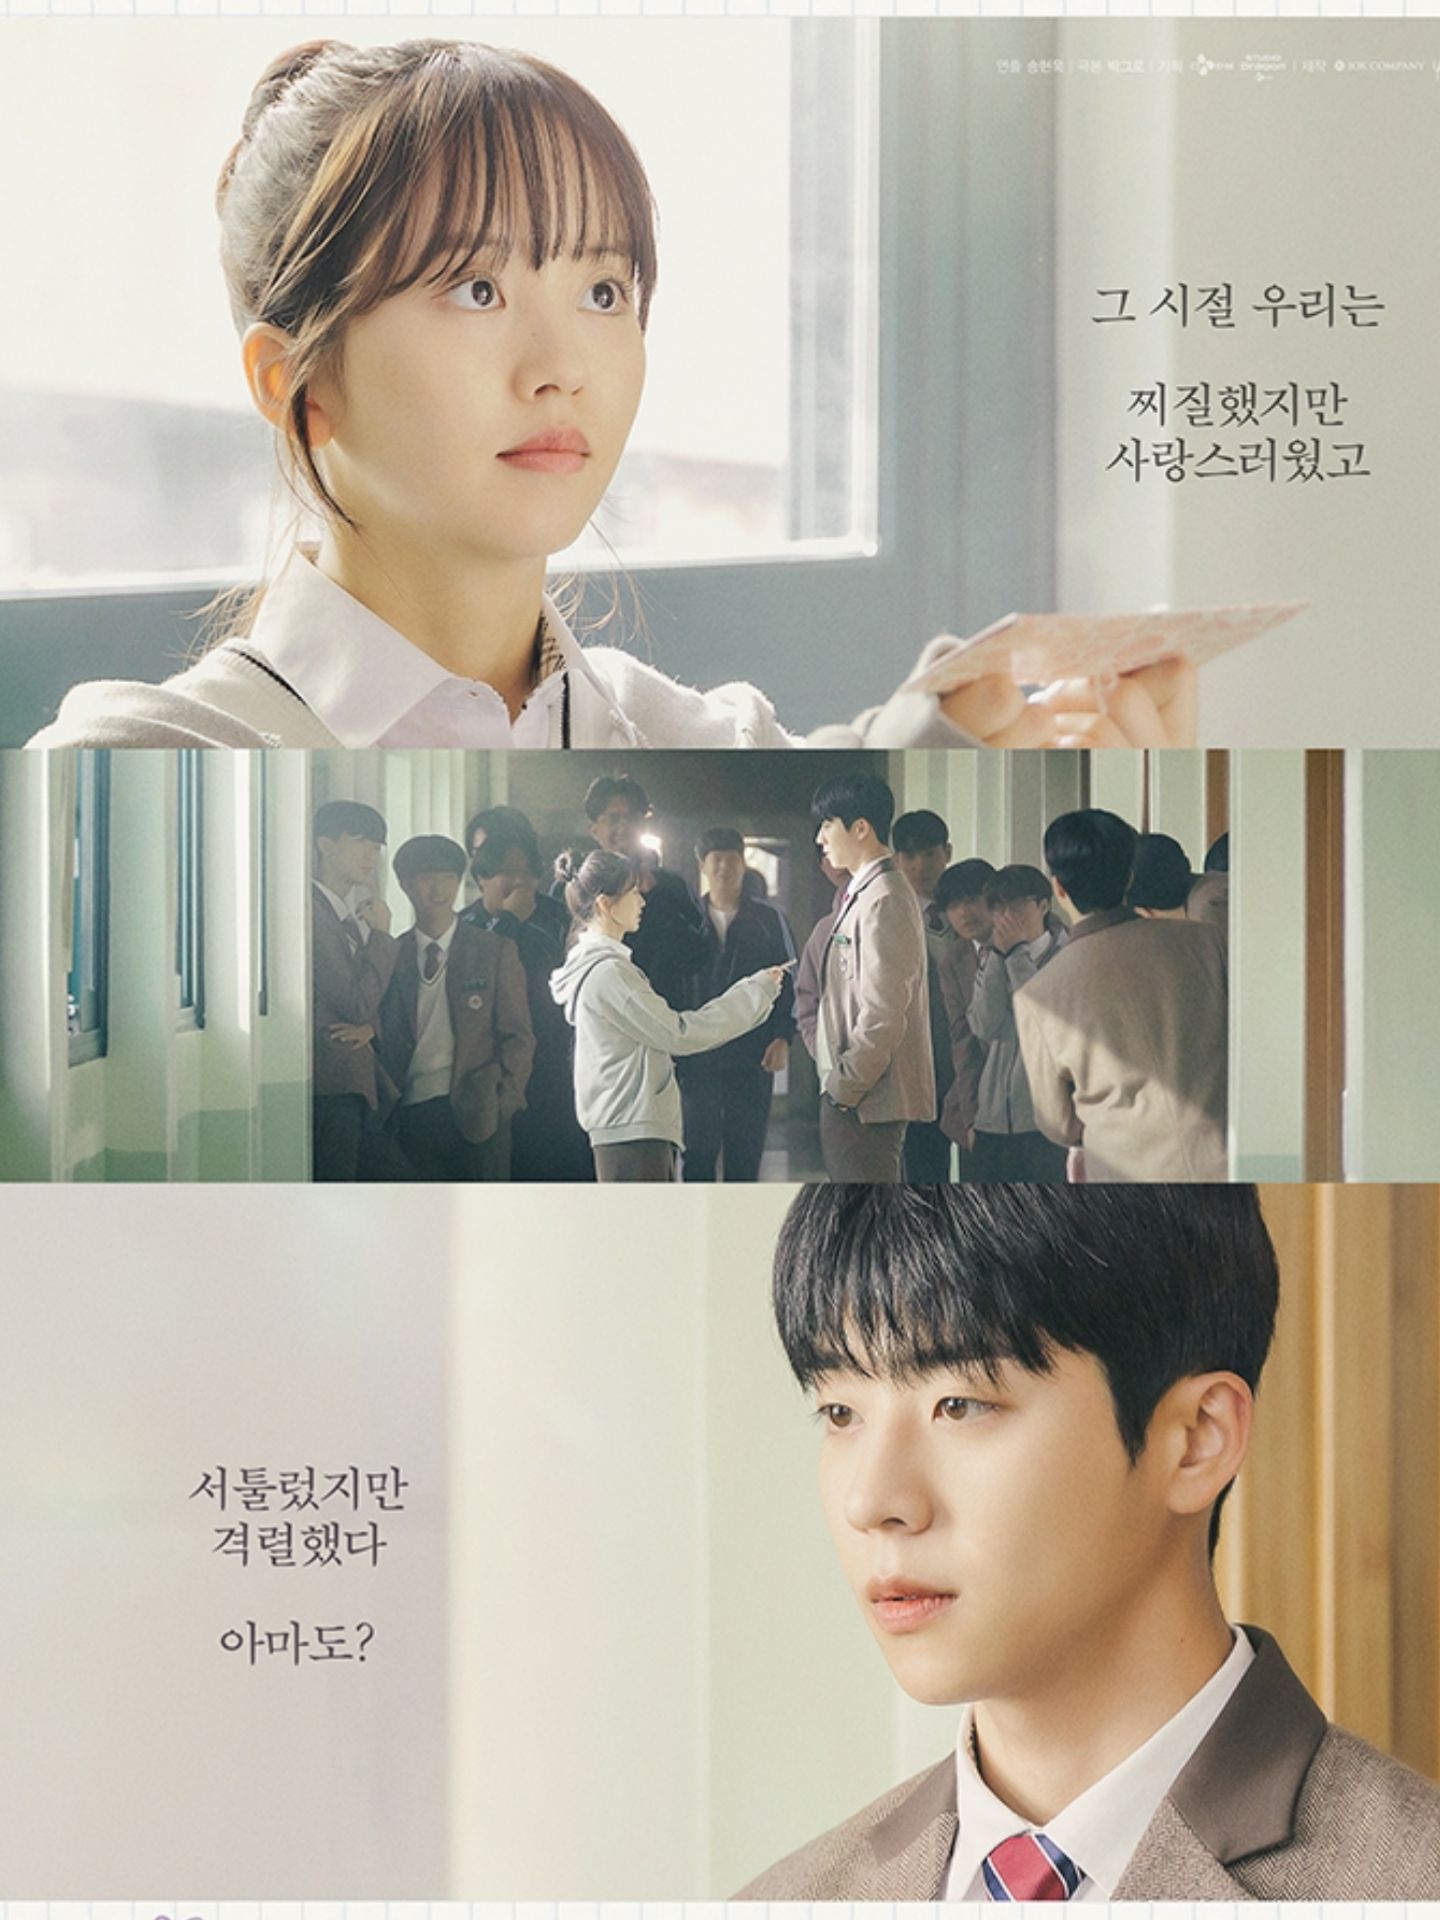 Kim So Hyun dan Chae Jong Hyeop jadi Siswa SMA yang  yang Sedang Jatuh Cinta Dalam Poster Nostalgia "Serendipity's Embrace"